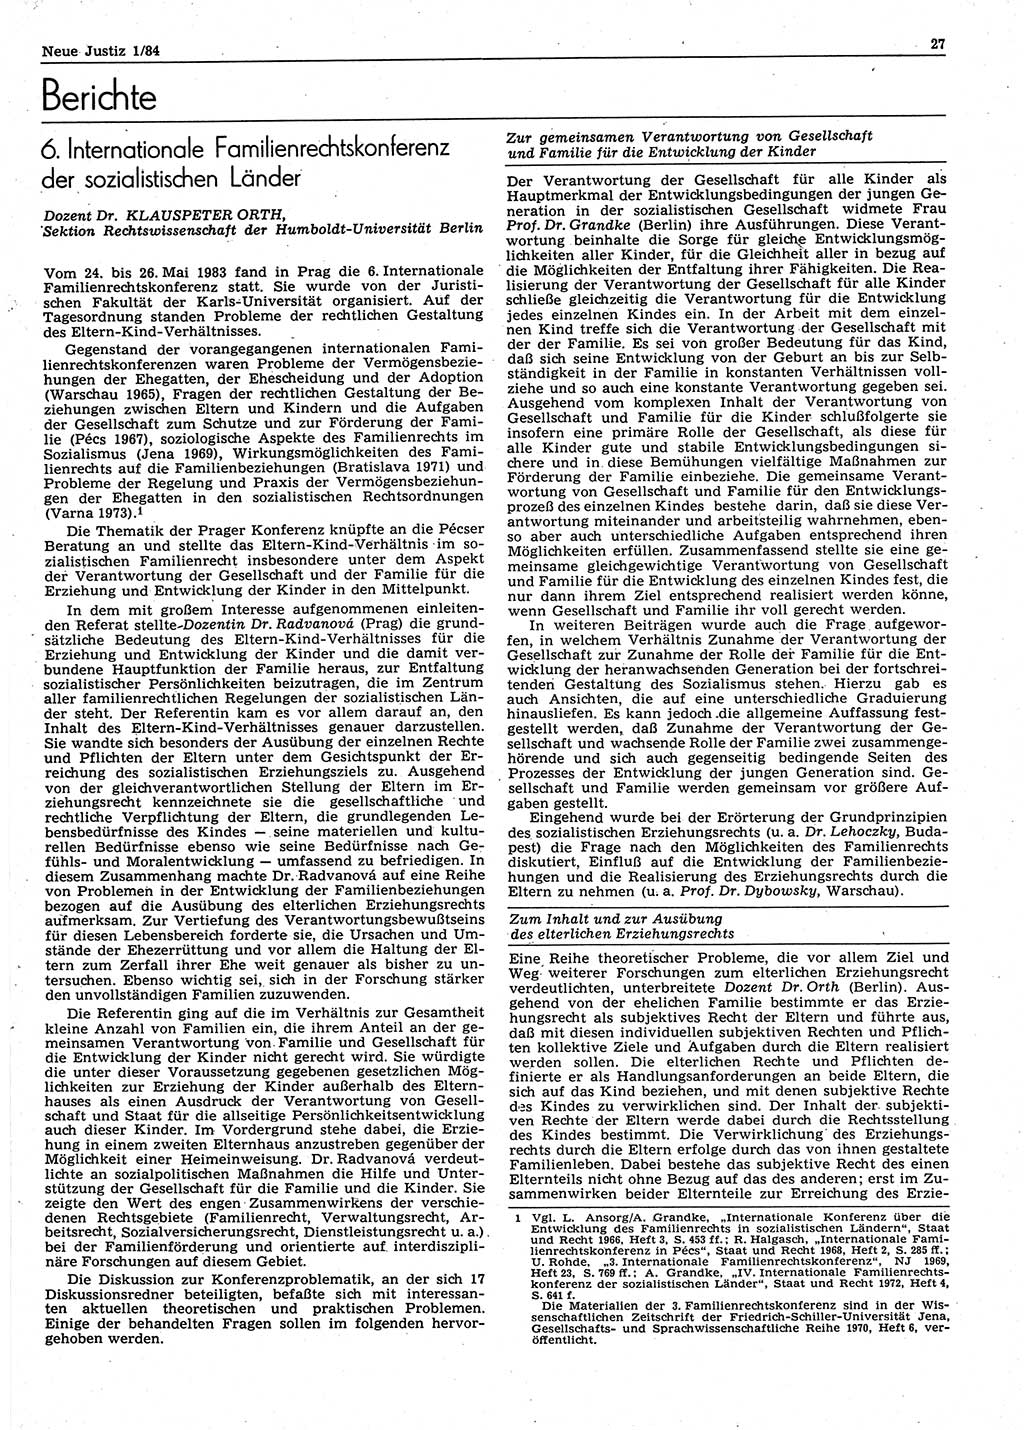 Neue Justiz (NJ), Zeitschrift für sozialistisches Recht und Gesetzlichkeit [Deutsche Demokratische Republik (DDR)], 38. Jahrgang 1984, Seite 27 (NJ DDR 1984, S. 27)